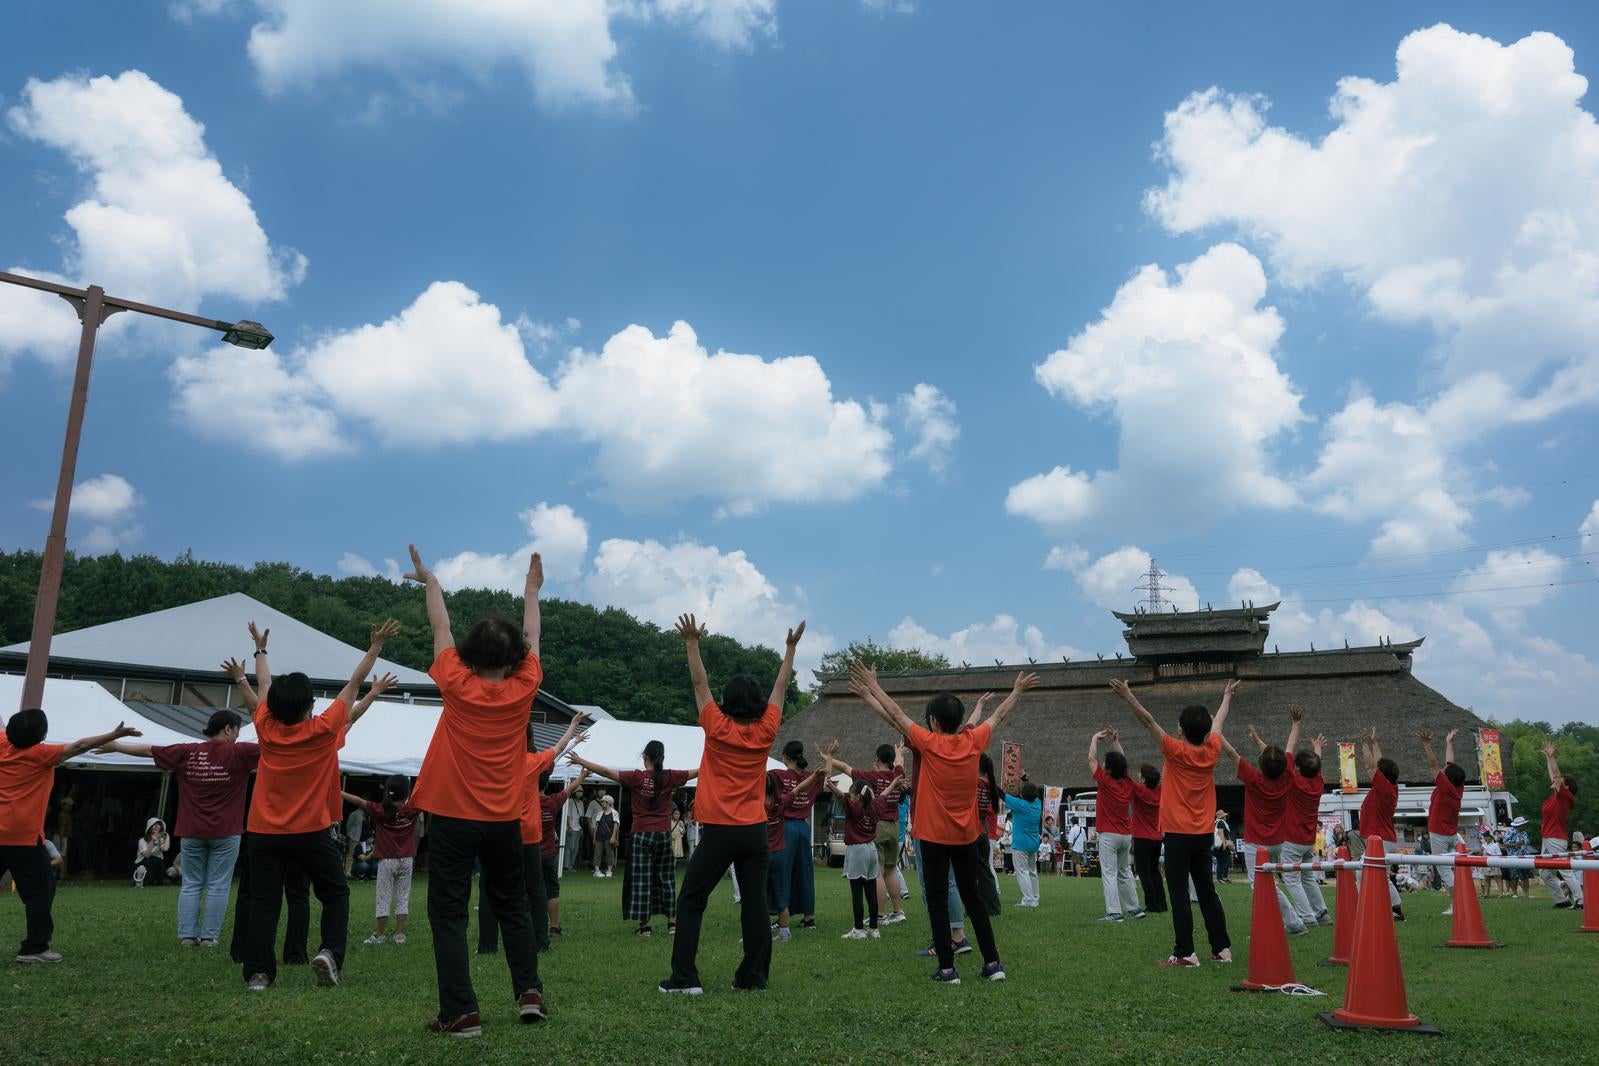 「三春花火会場で両手を挙げて踊る」の写真